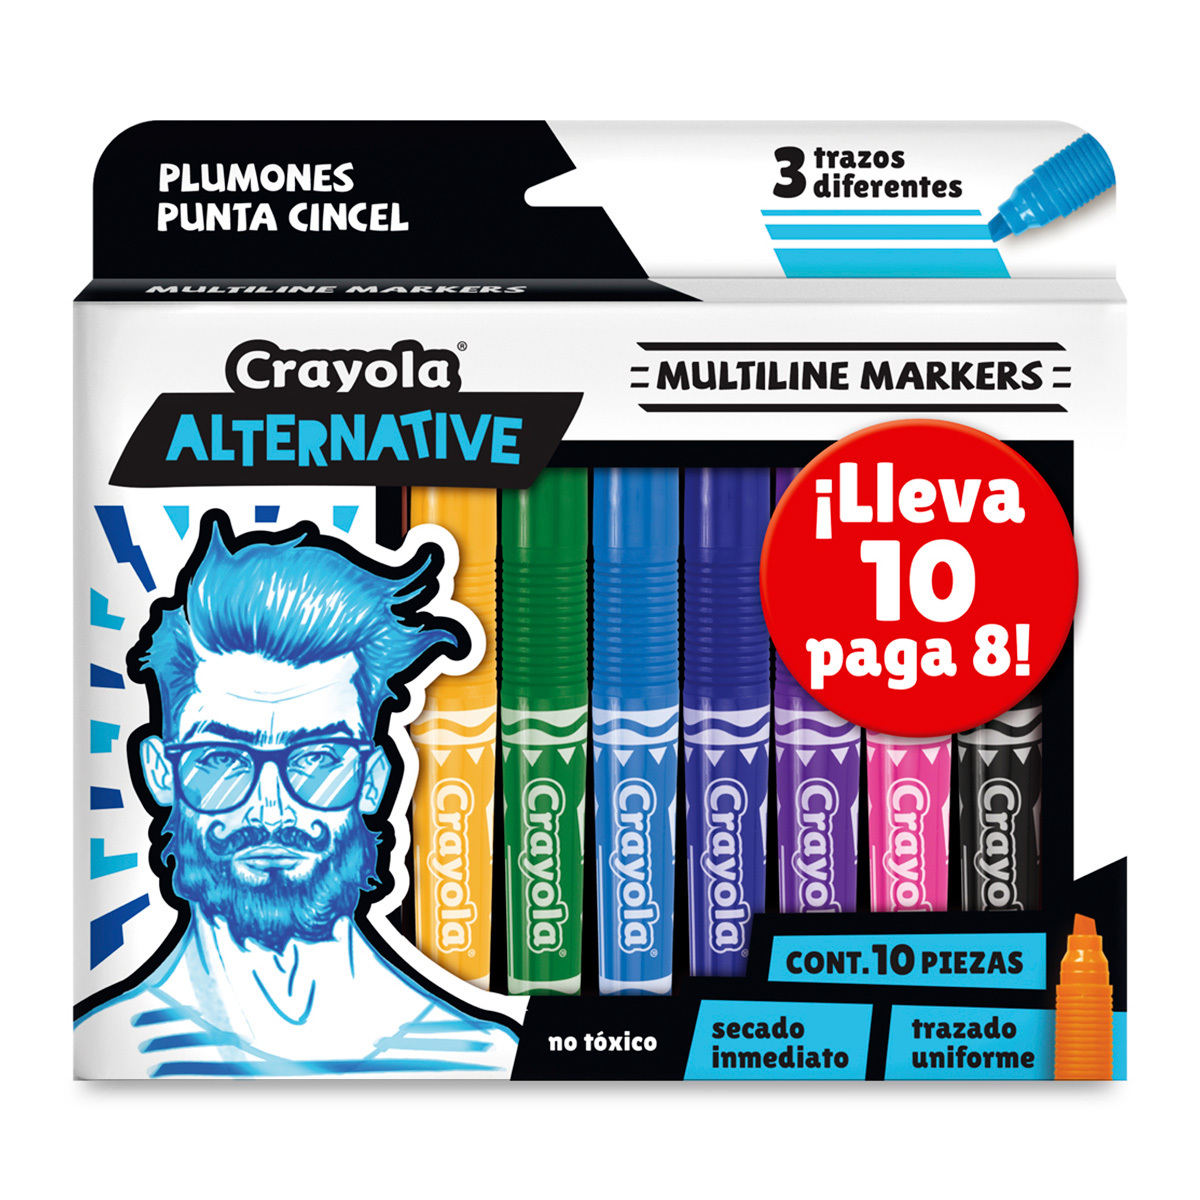 Plumones Crayola Alternative / 8 piezas